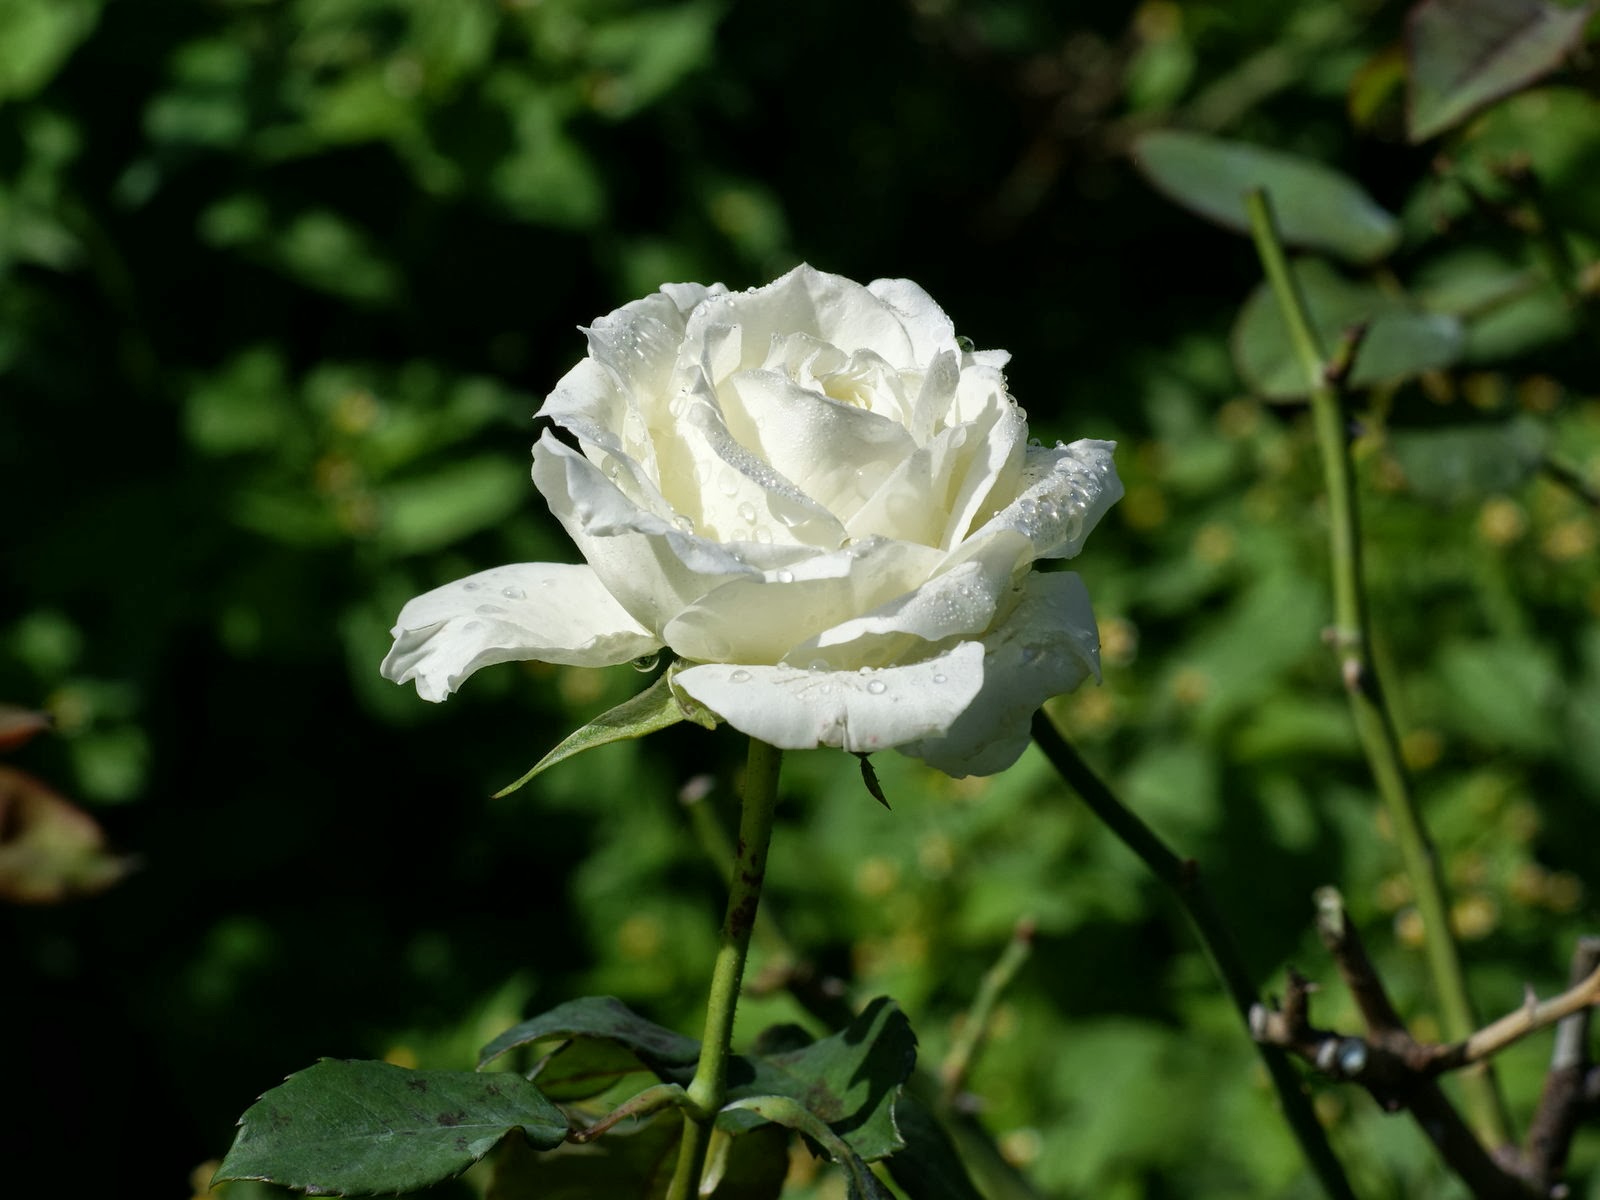 wallpaper mawar putih,flower,flowering plant,petal,rose,rose family